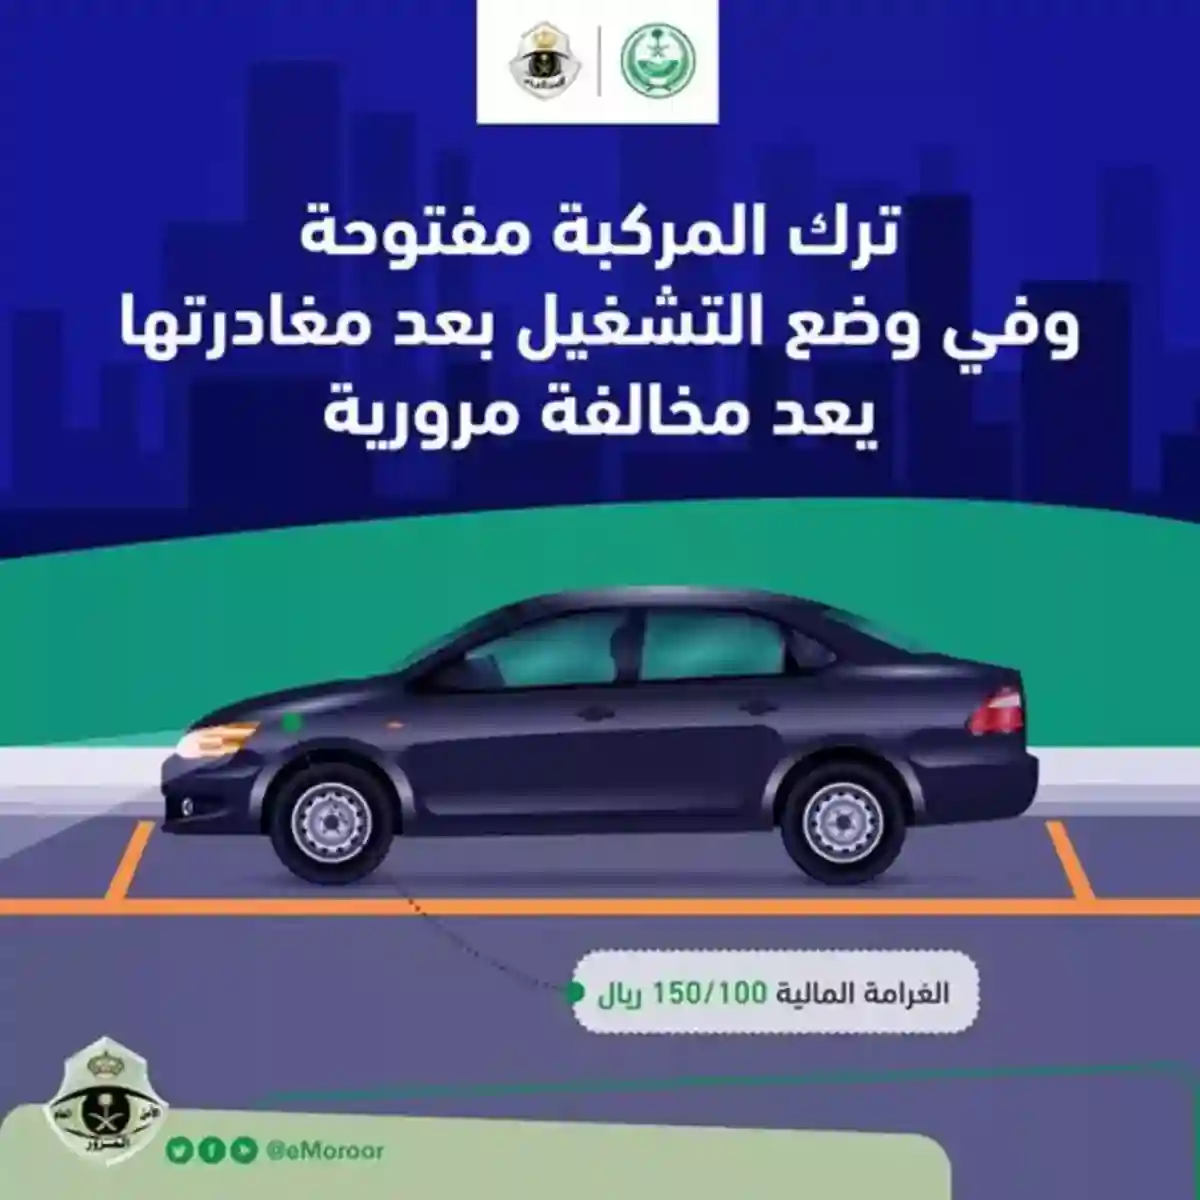 المرور السعودي يحذر من مخالفة ترك السيارة تعمل بدون وجود السائق